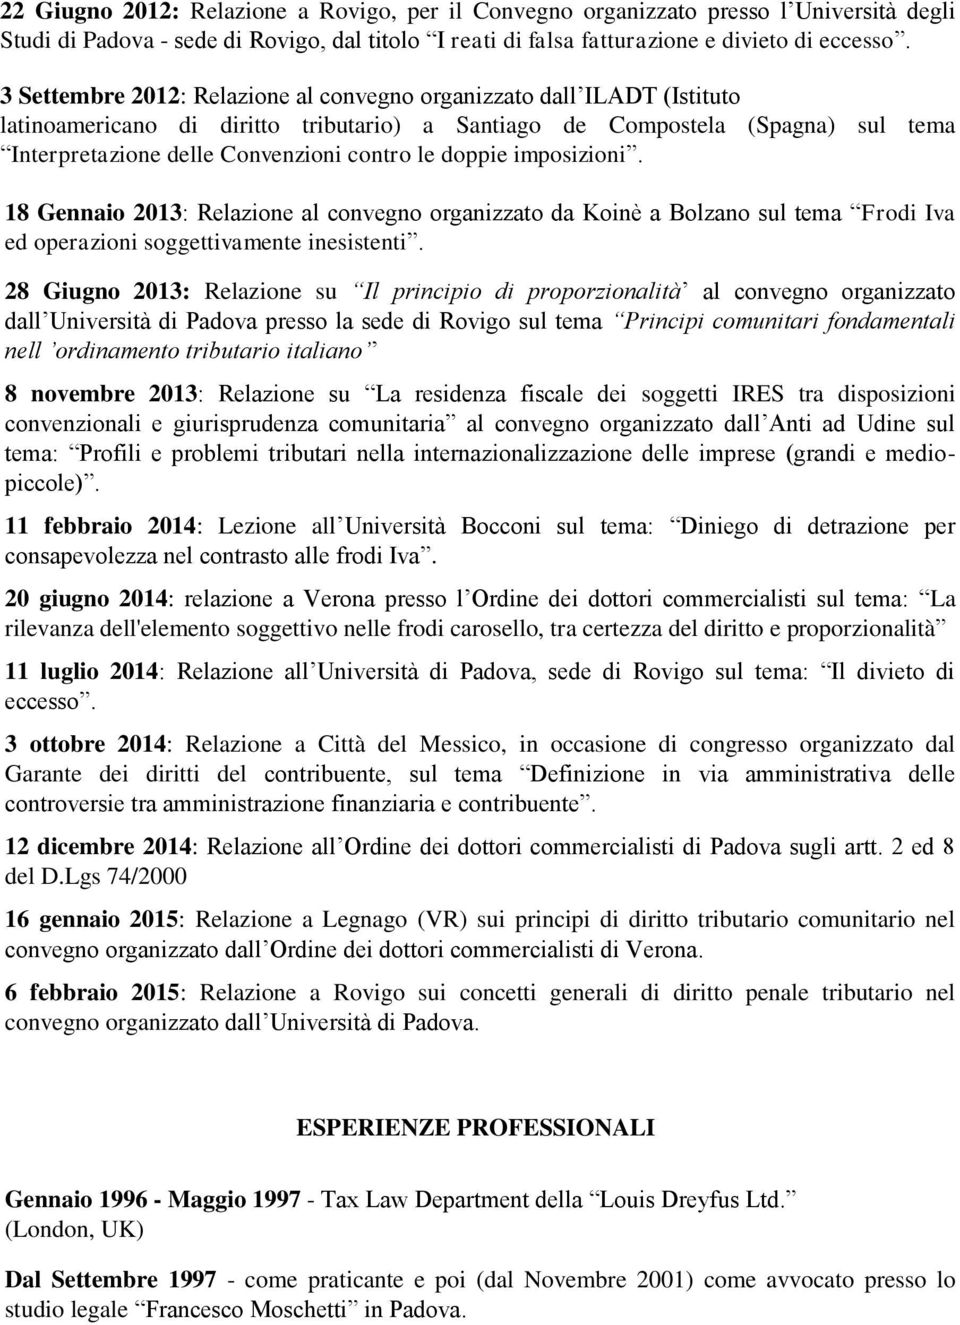 doppie imposizioni. 18 Gennaio 2013: Relazione al convegno organizzato da Koinè a Bolzano sul tema Frodi Iva ed operazioni soggettivamente inesistenti.